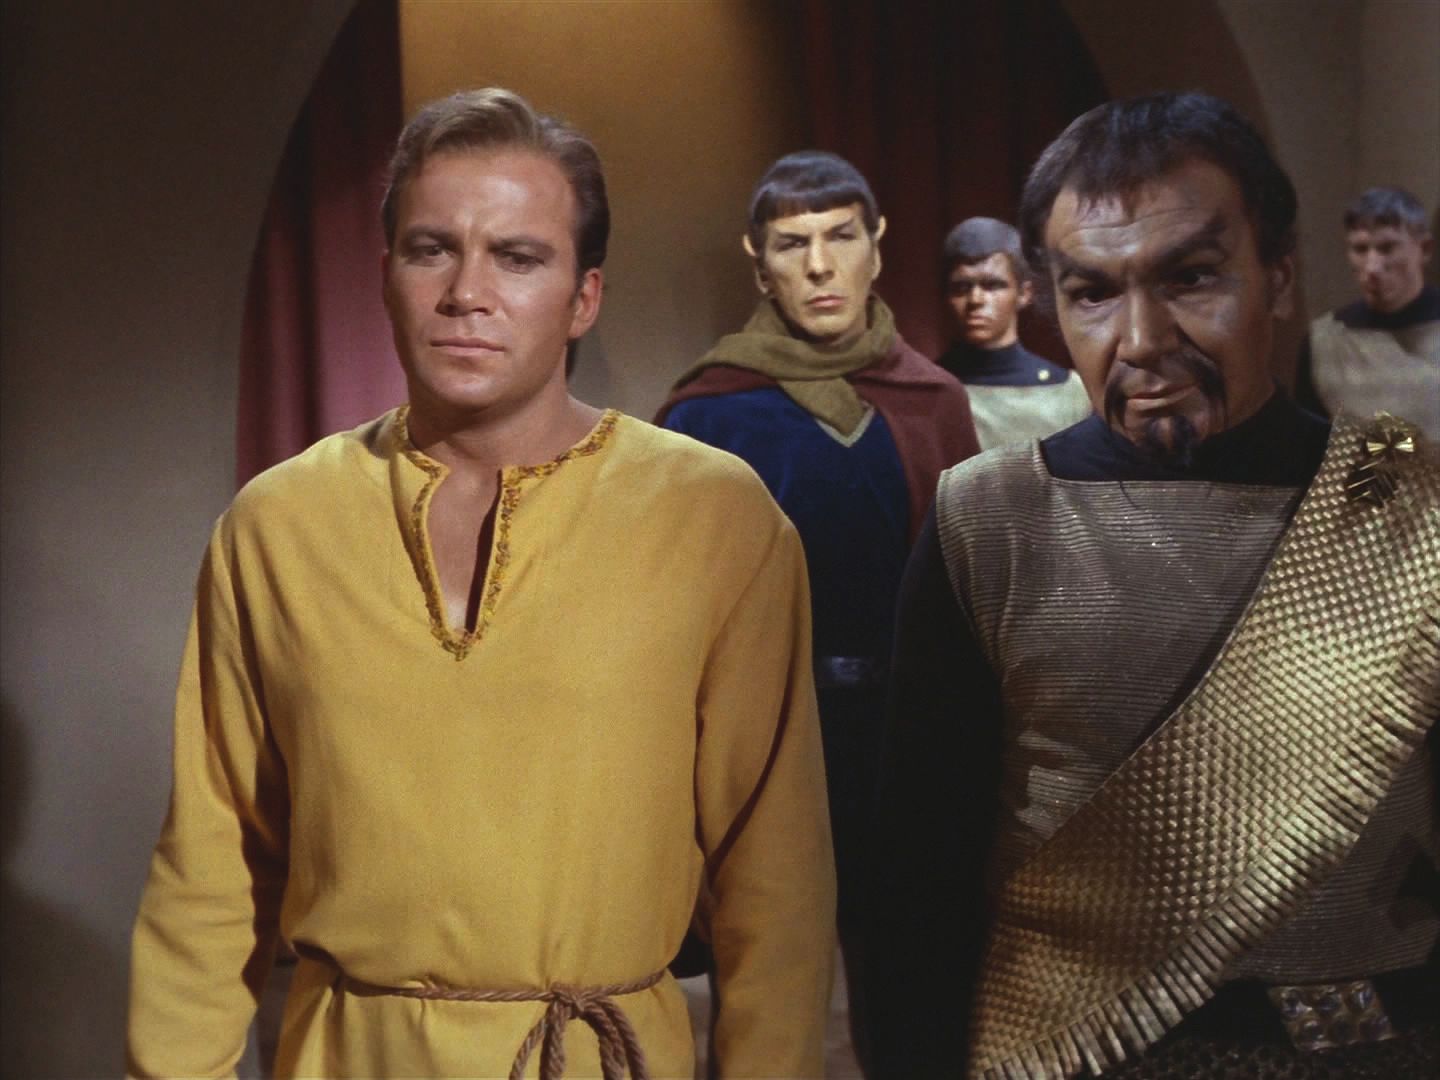 Korovi je jasné, že explozi má na svědomí "Baroner", který mu vzdoroval. I jeho ale překvapuje, že Organianci prozradili Kirkovu a Spockovu totožnost. Oba vojáci je sledují s pohrdáním.